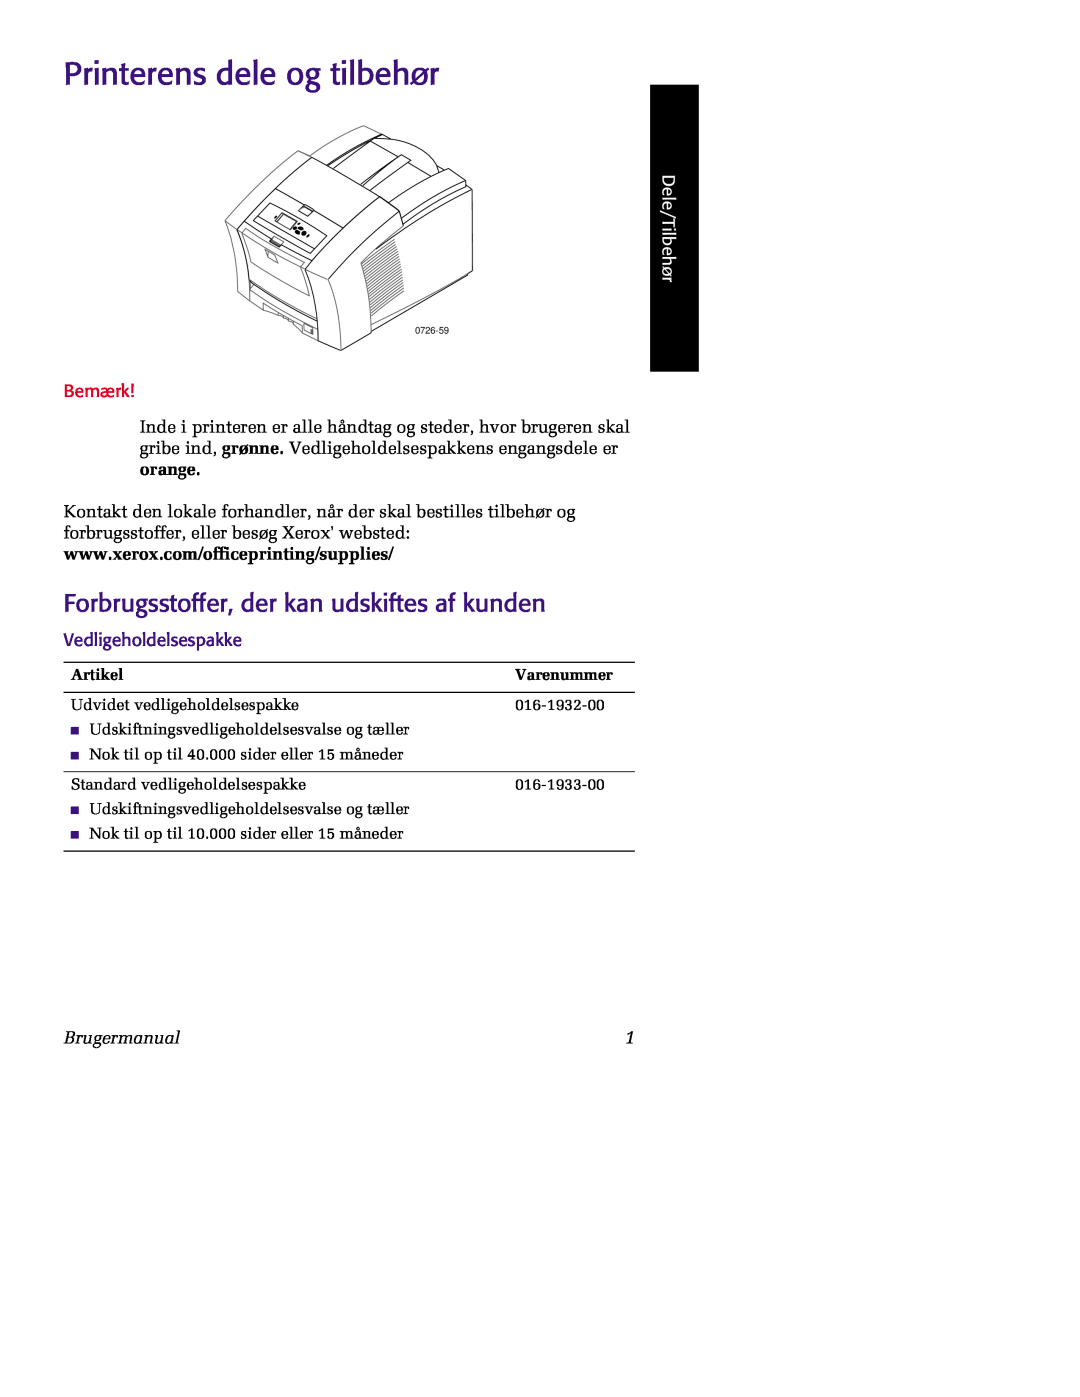 Tektronix 860 Printerens dele og tilbehør, Forbrugsstoffer, der kan udskiftes af kunden, Dele/Tilbehør, Bemærk, Artikel 